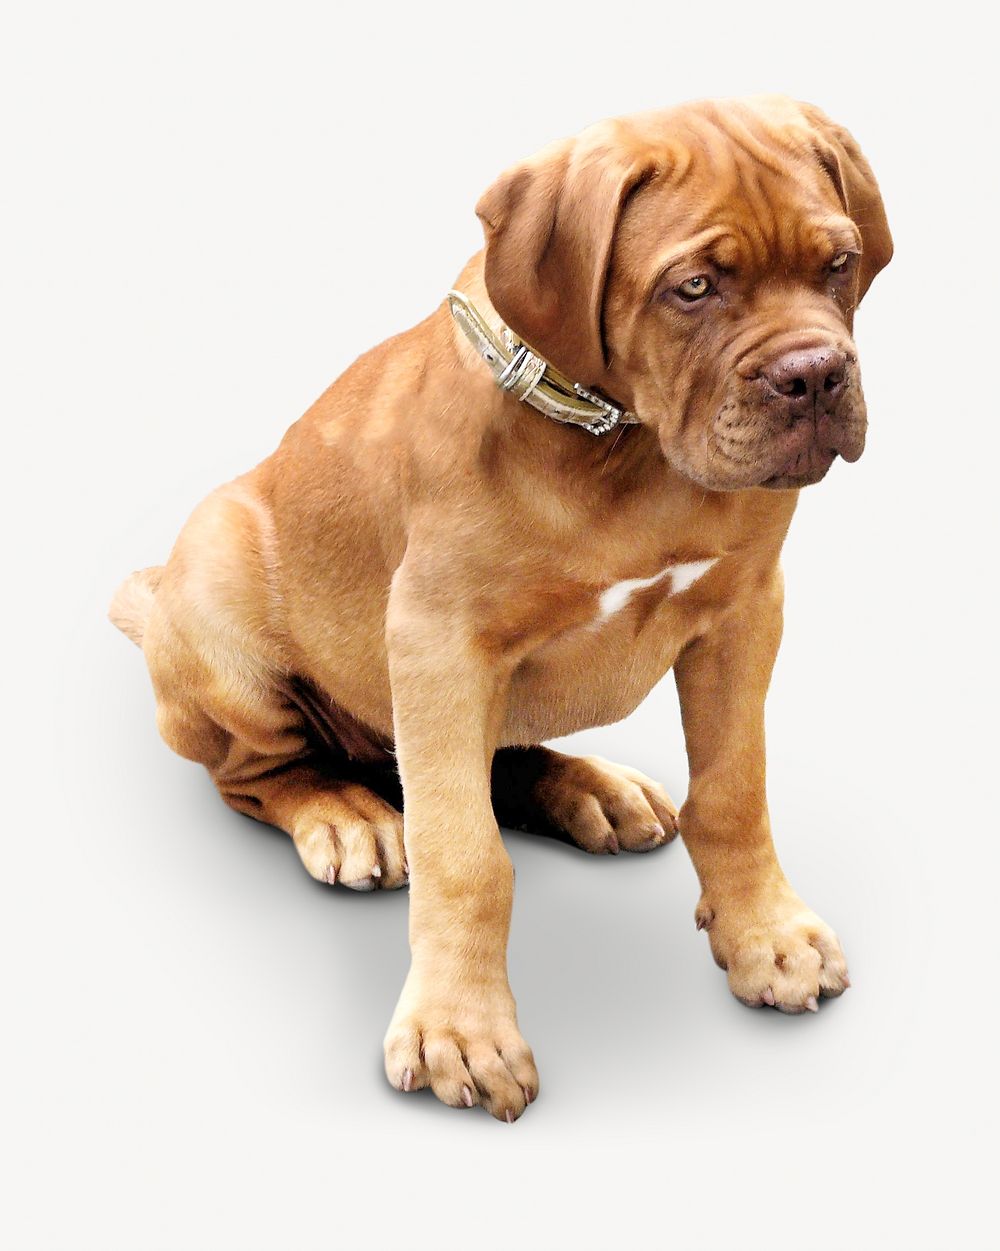 Dogue de Bordeaux dog, pet animal image